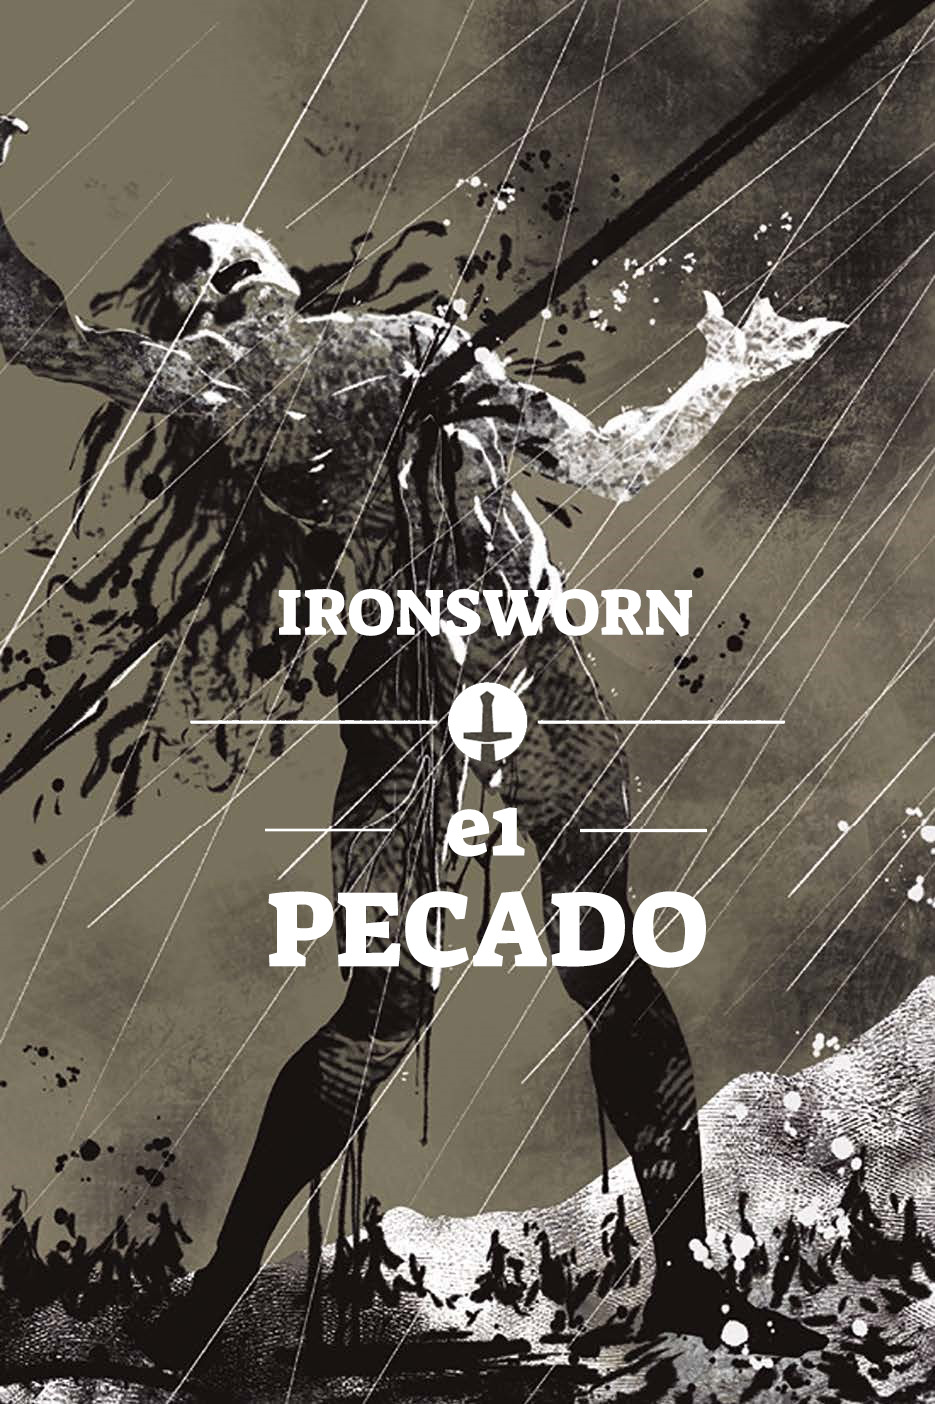 Pecado [Ironsworn] E1